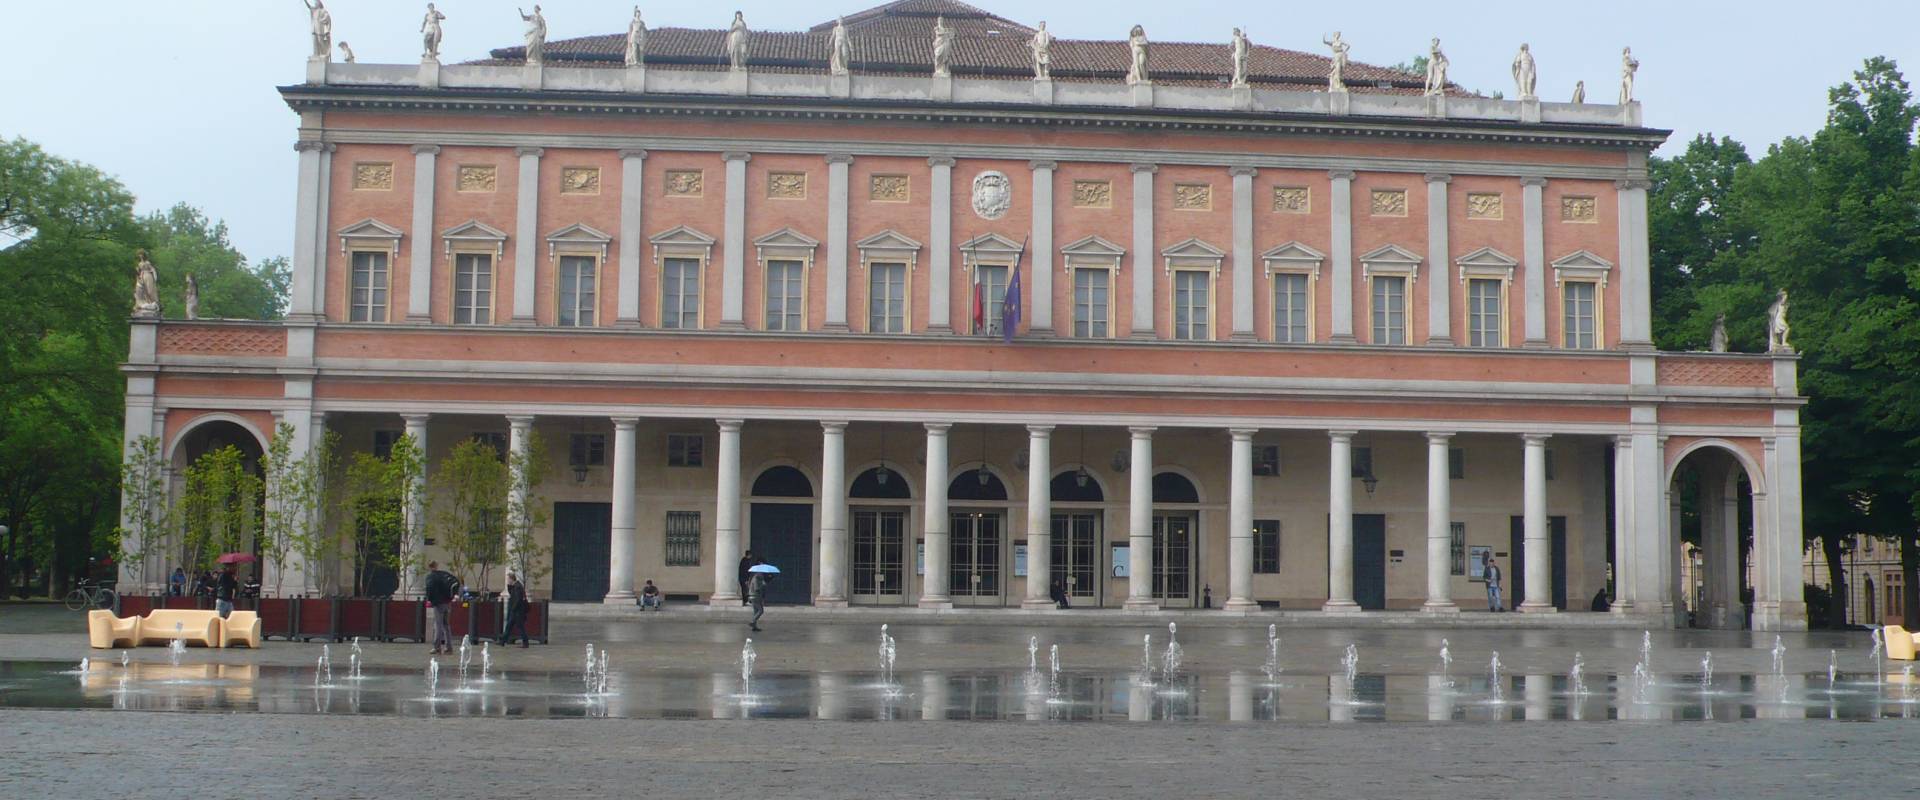 Teatro Municipale Romolo Valli - Reggio Emilia photo by RatMan1234